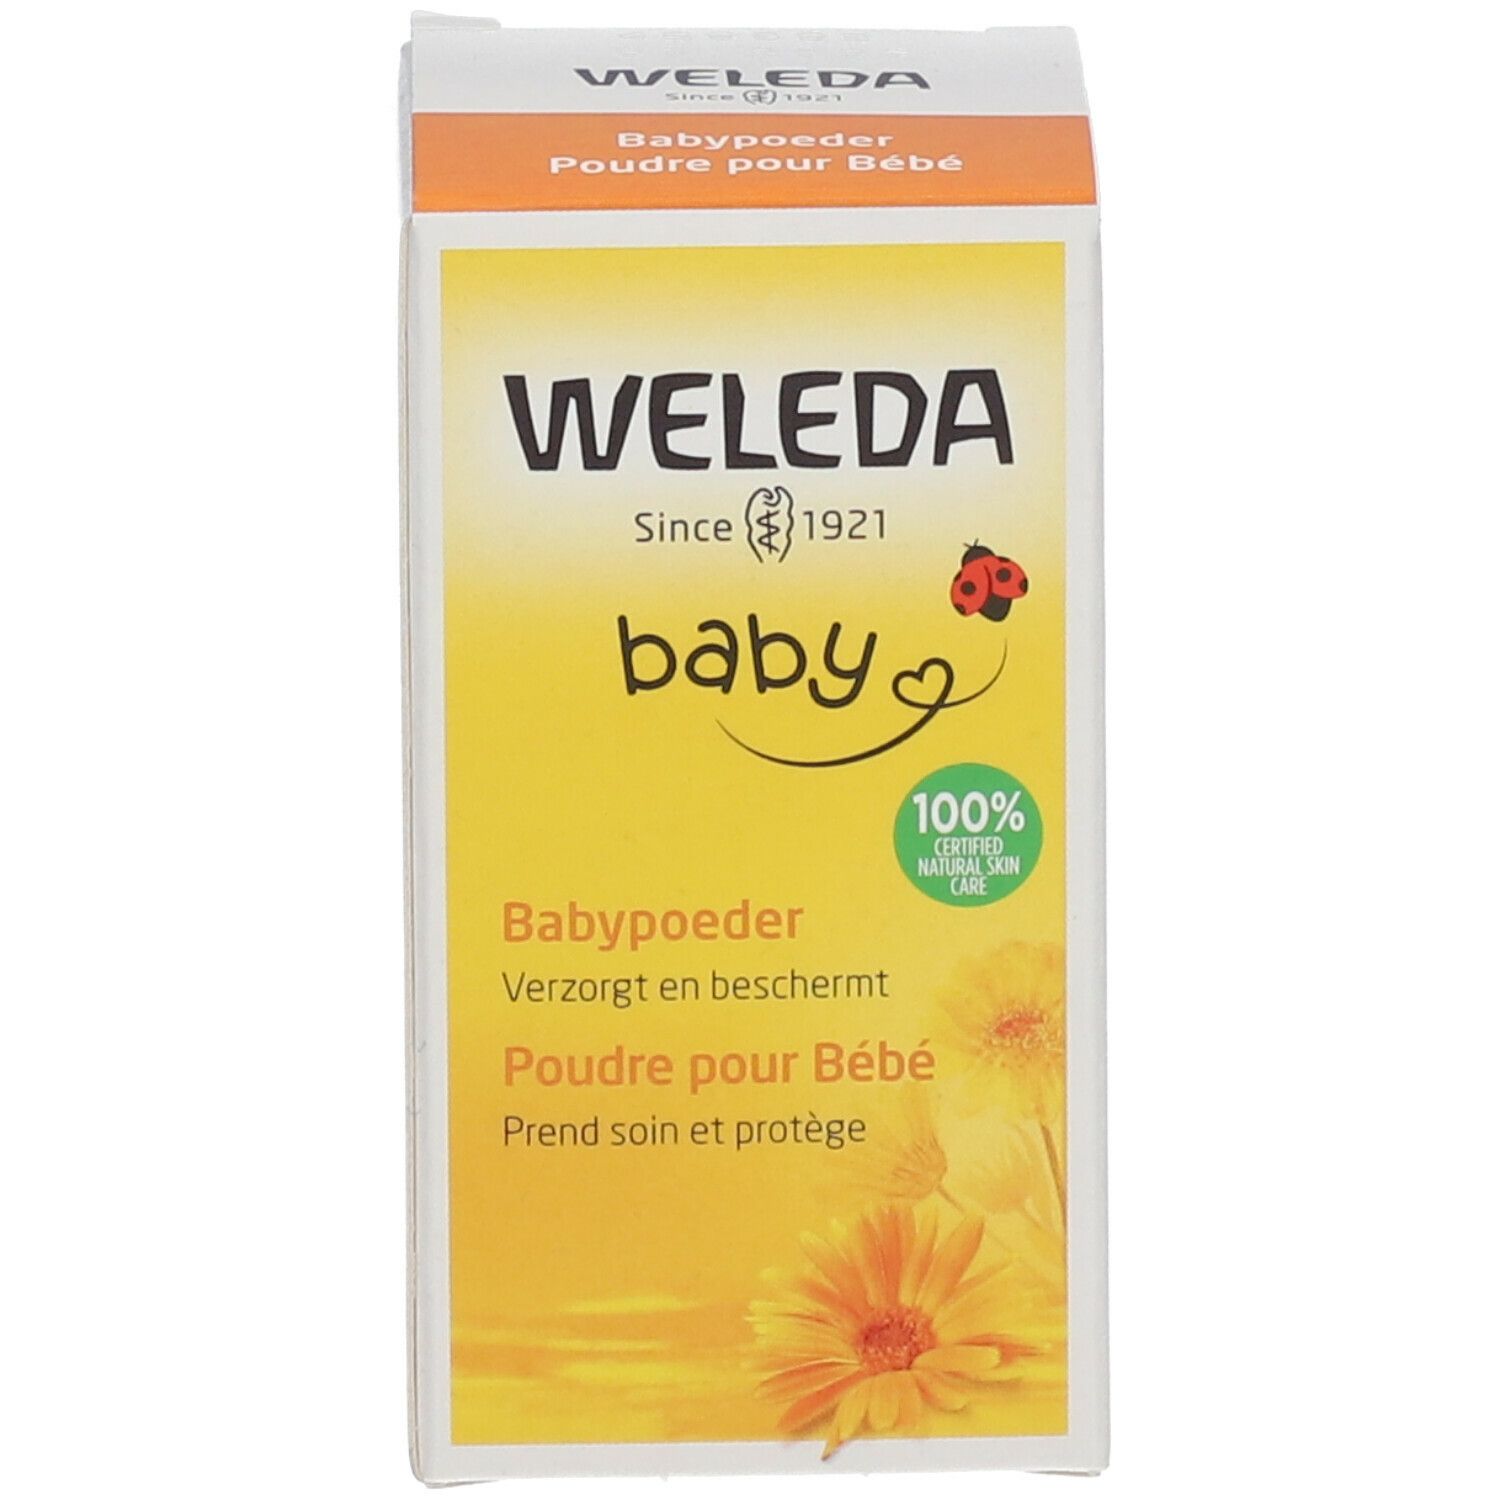 WELEDA BABY Babypuder